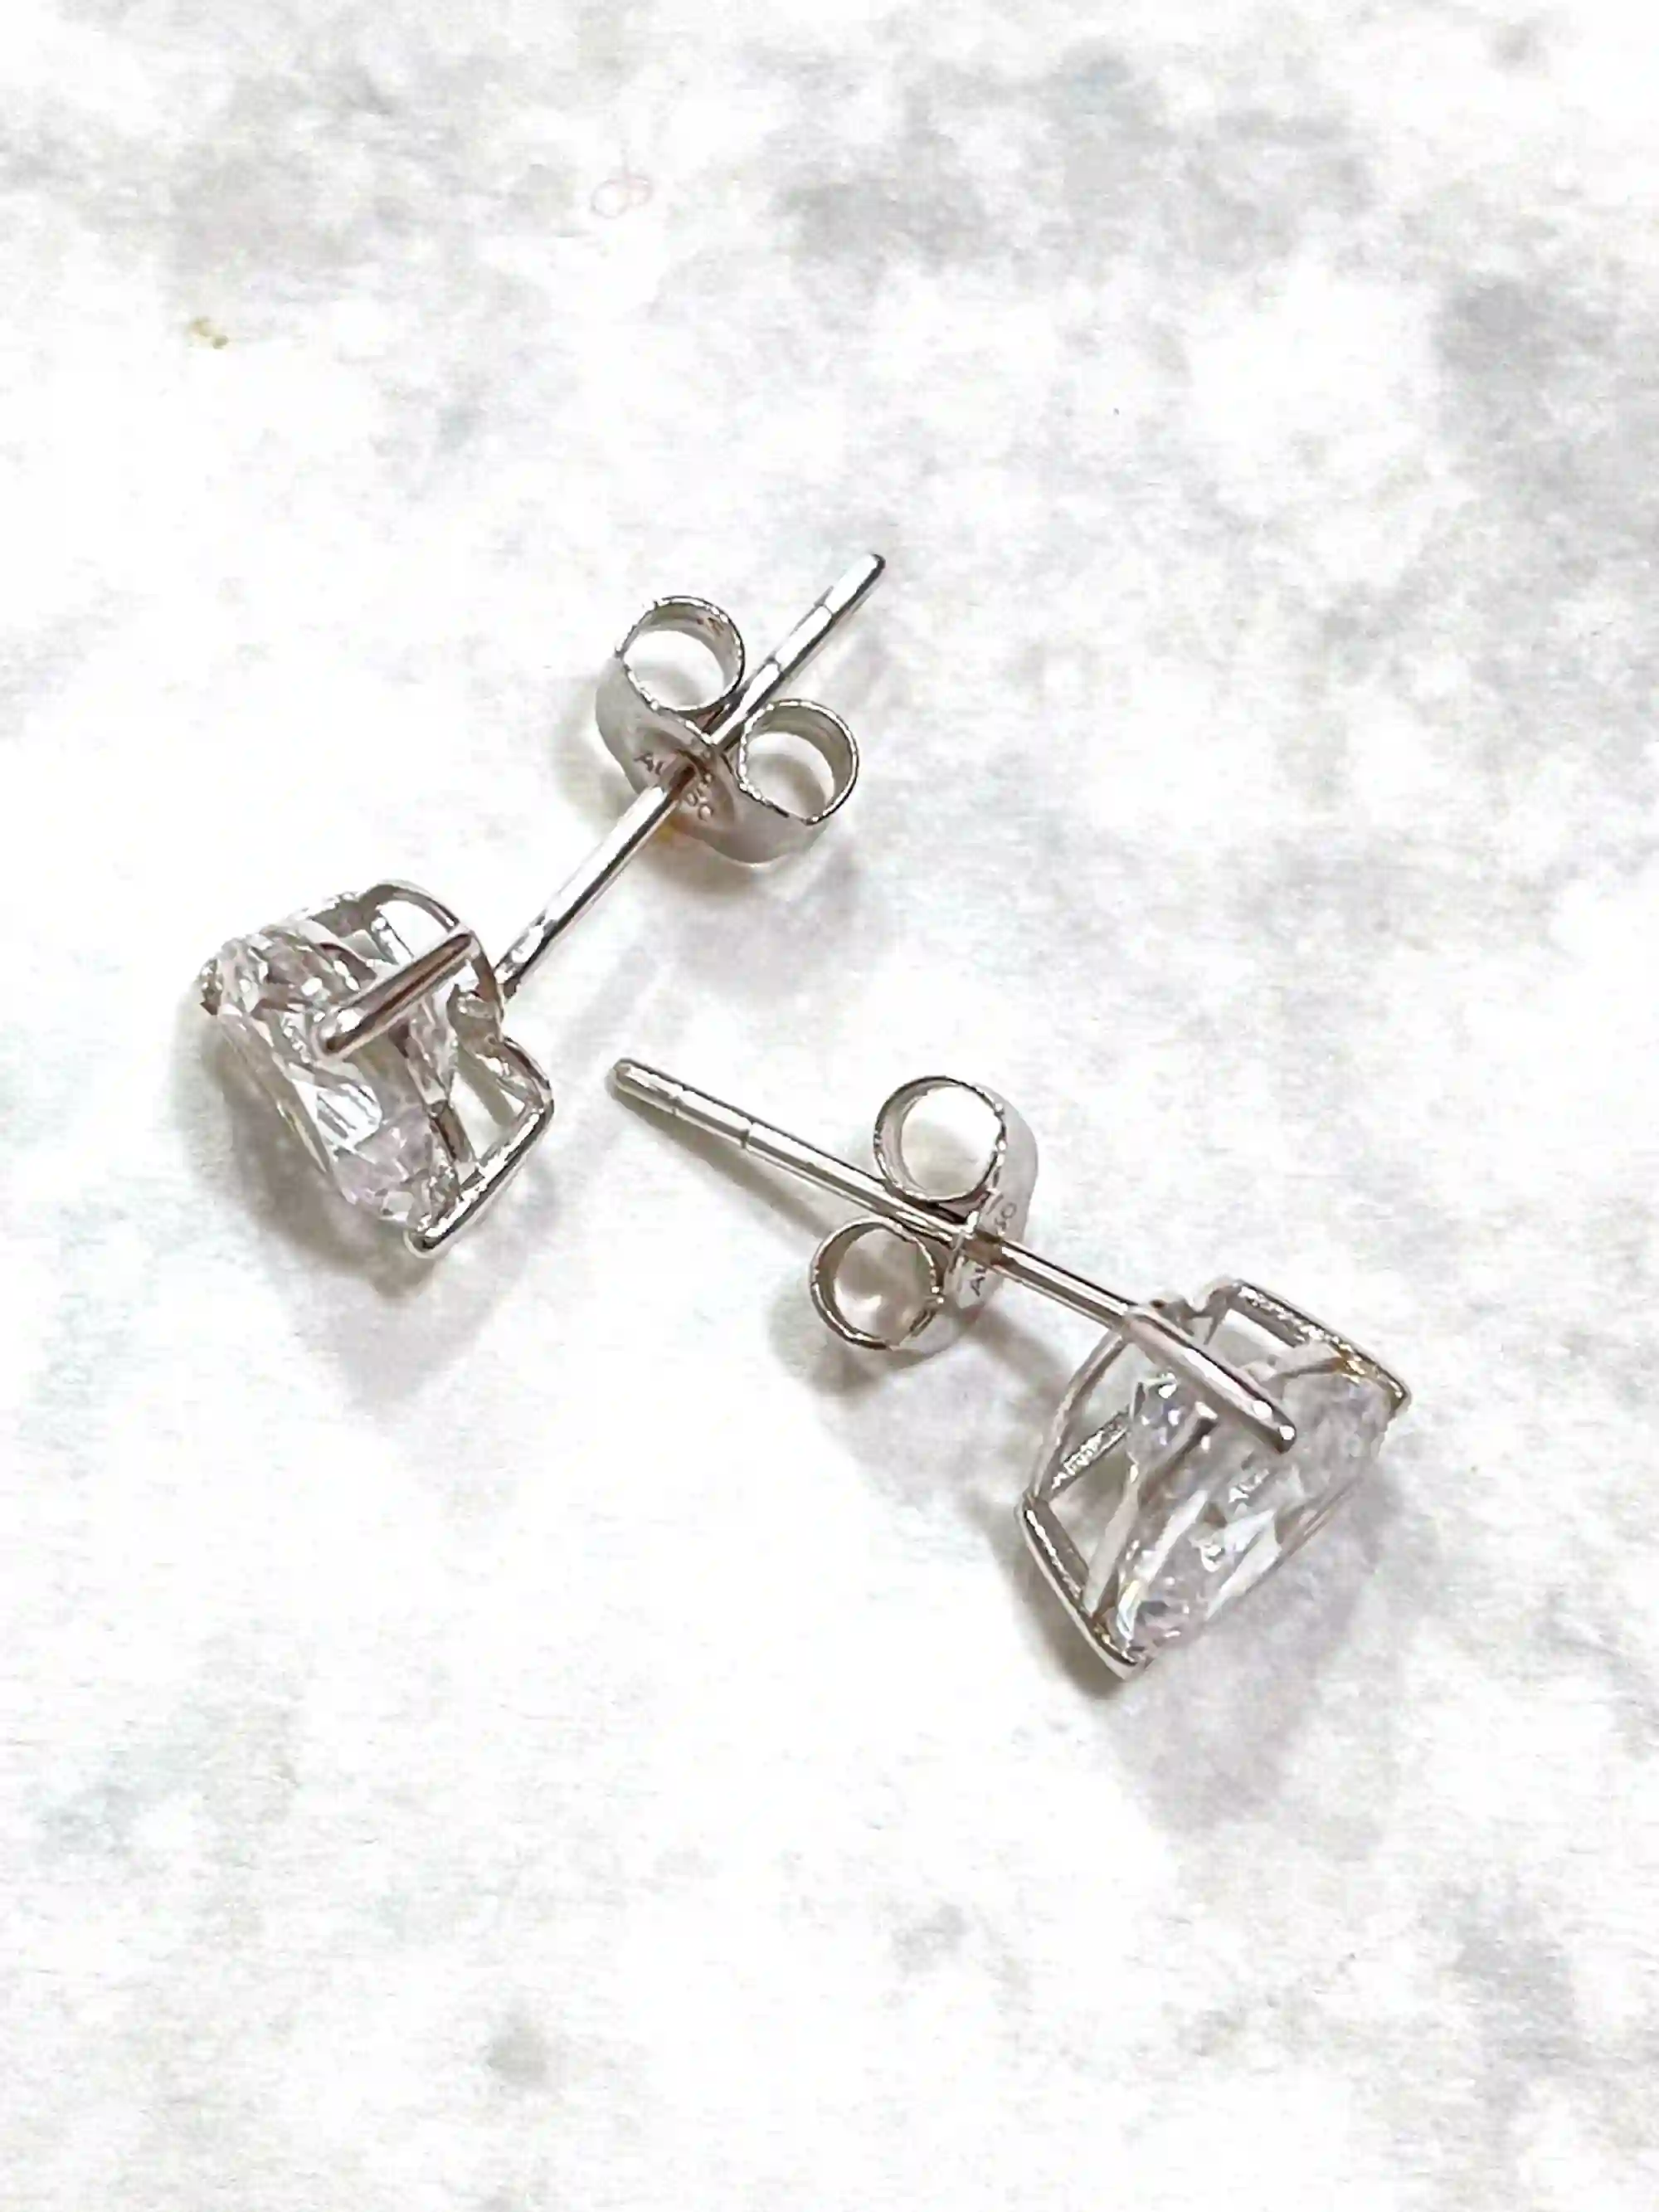 2carat Heart Shaped Diamond Earrings HANDMADE SOLID 18K White Gold Earrings Studs diamond Heart Jewelry for women 6.5mm Heart Diamond Studs 